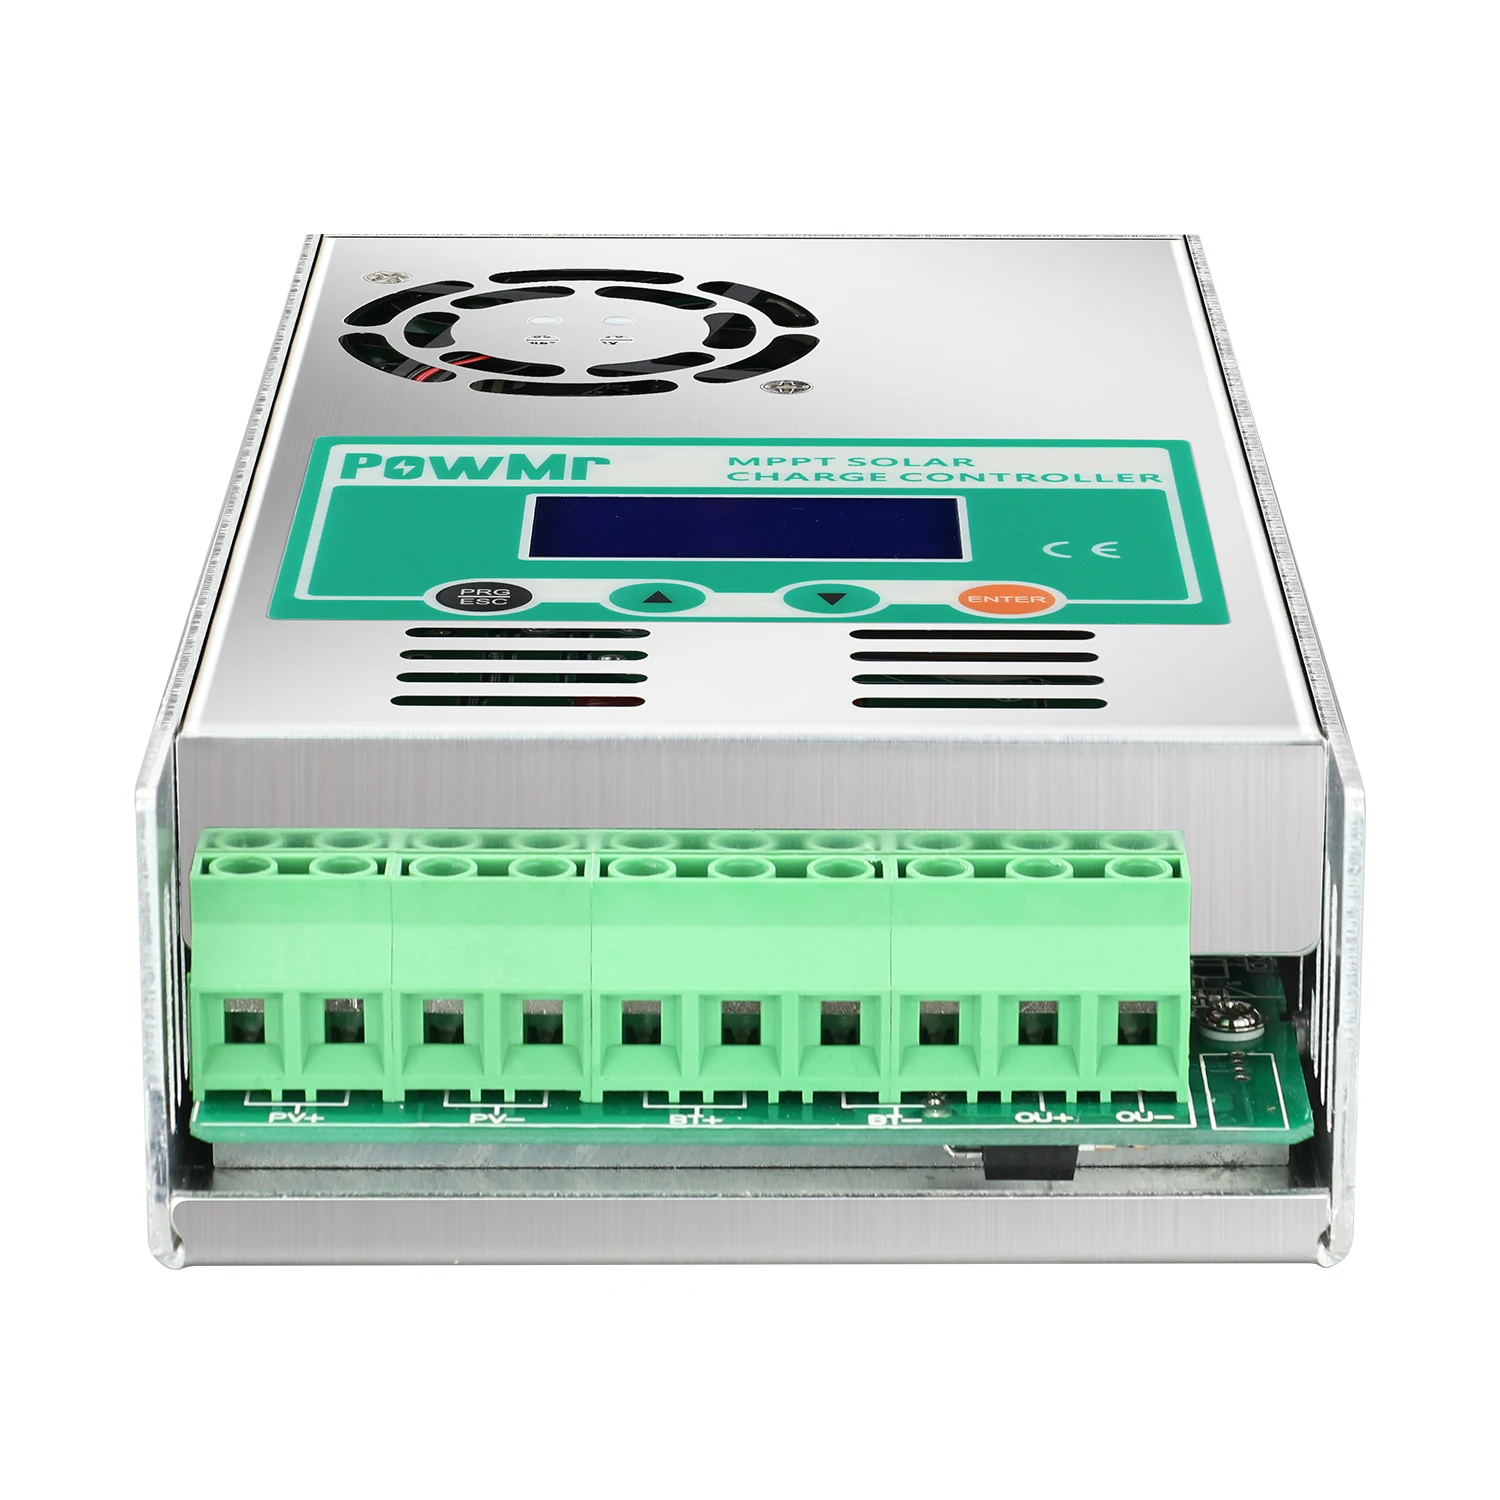 Powmr mpt-ソーラー充電コントローラー,12v,24v,36v,48v,60a,低消費電力,LiFePo4,鉛蓄電池充電レギュレーター